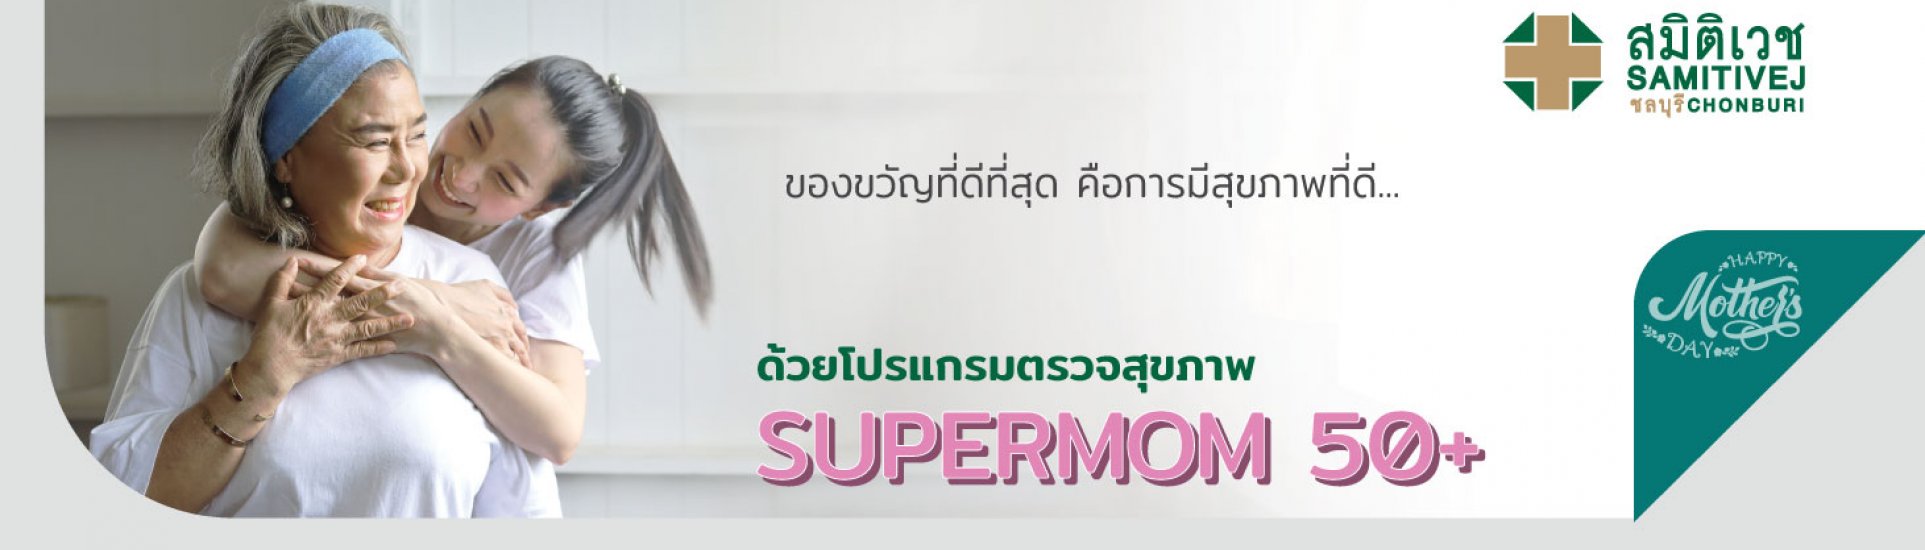 SUPERMOM50+-samitivejchonburi-slide